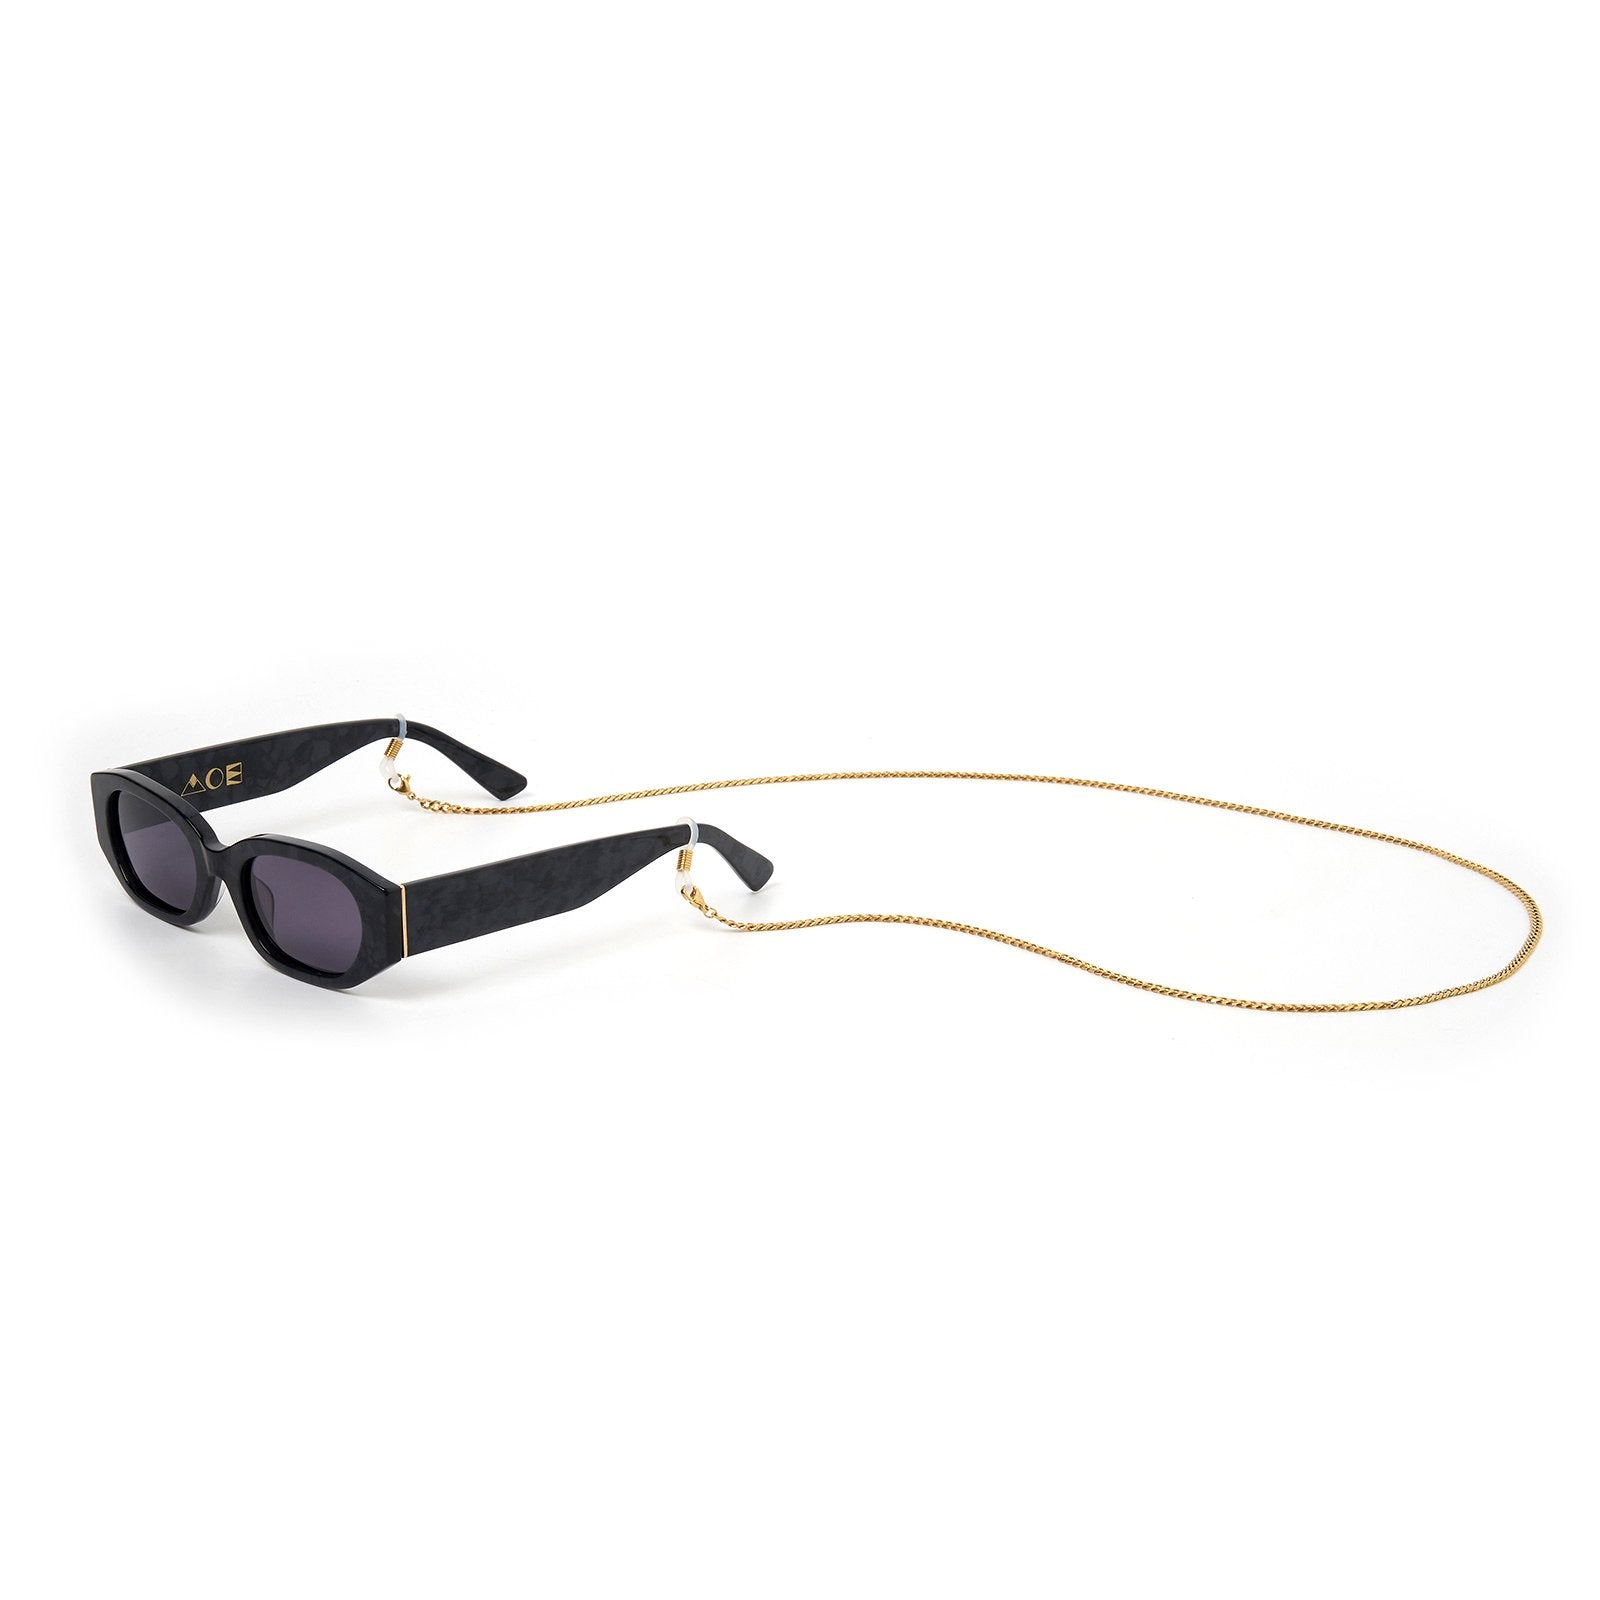 Koa Gold Sunglasses Chain